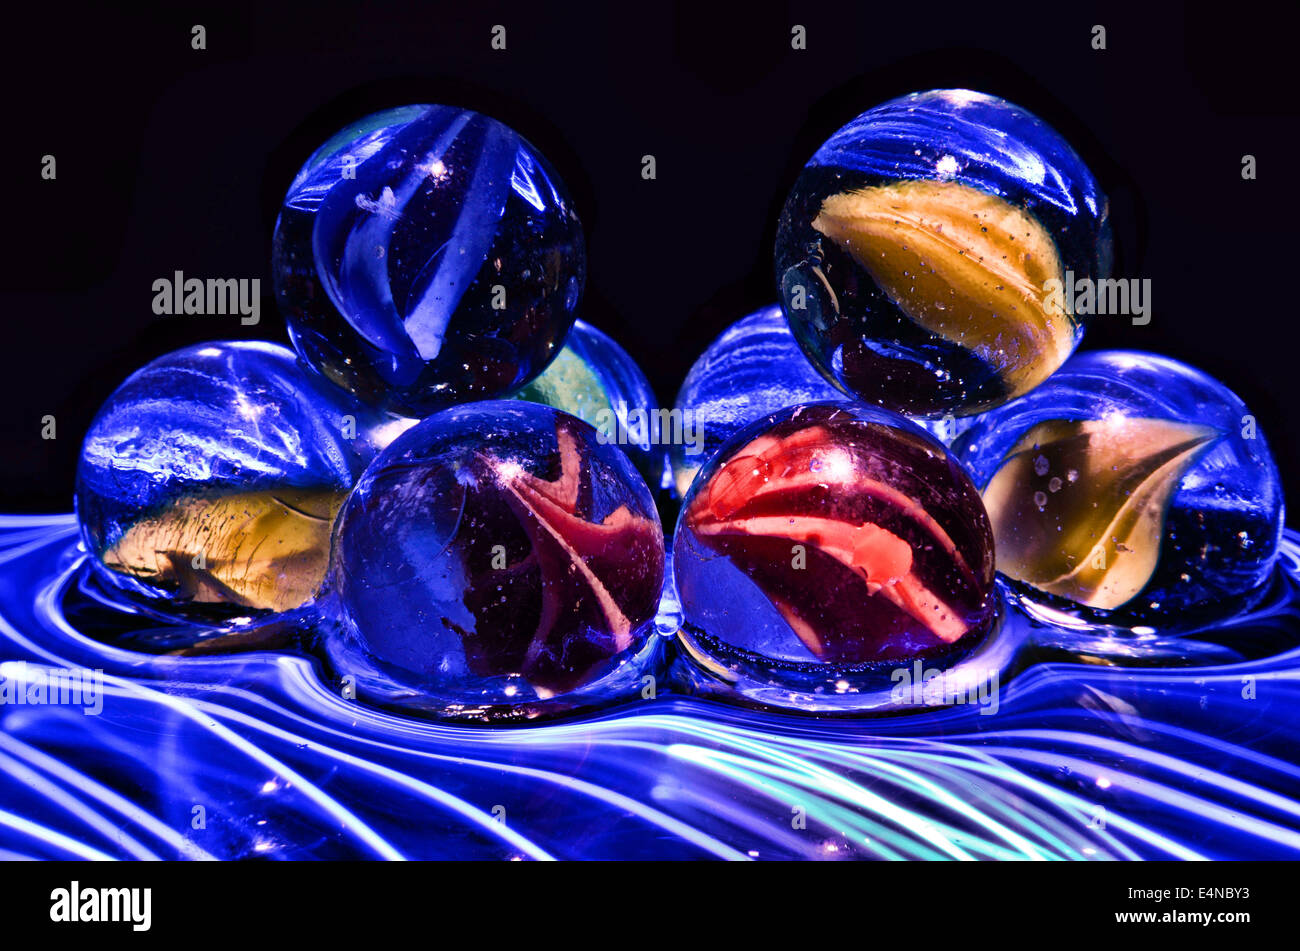 Marmi colorati con diversi effetti di illuminazione Foto Stock